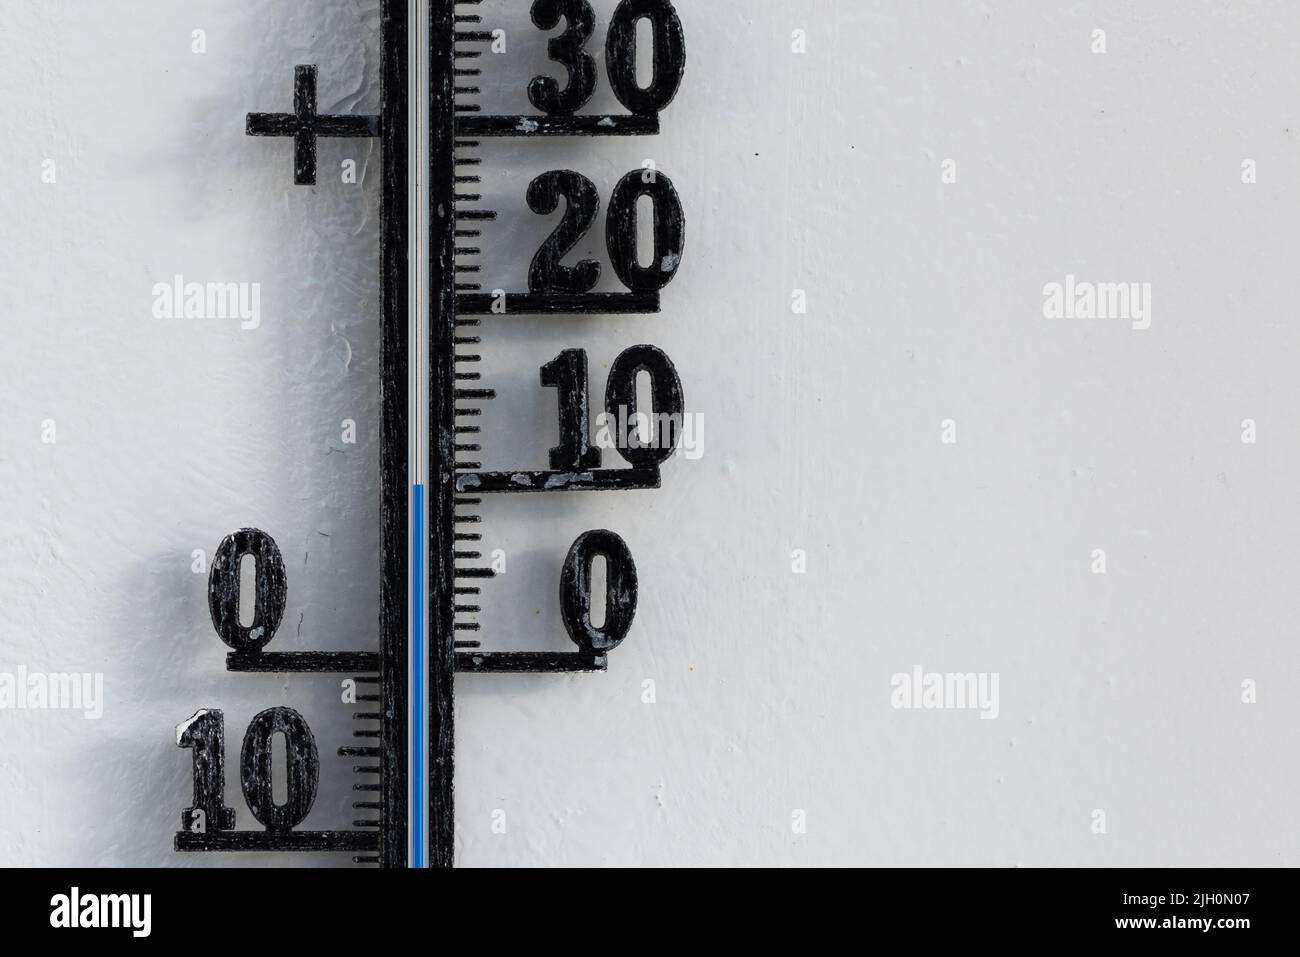 Termómetro analógico negro clásico colgado en una pared blanca que muestra una escala de temperatura azul de diez, 10 grados centígrados Foto de stock